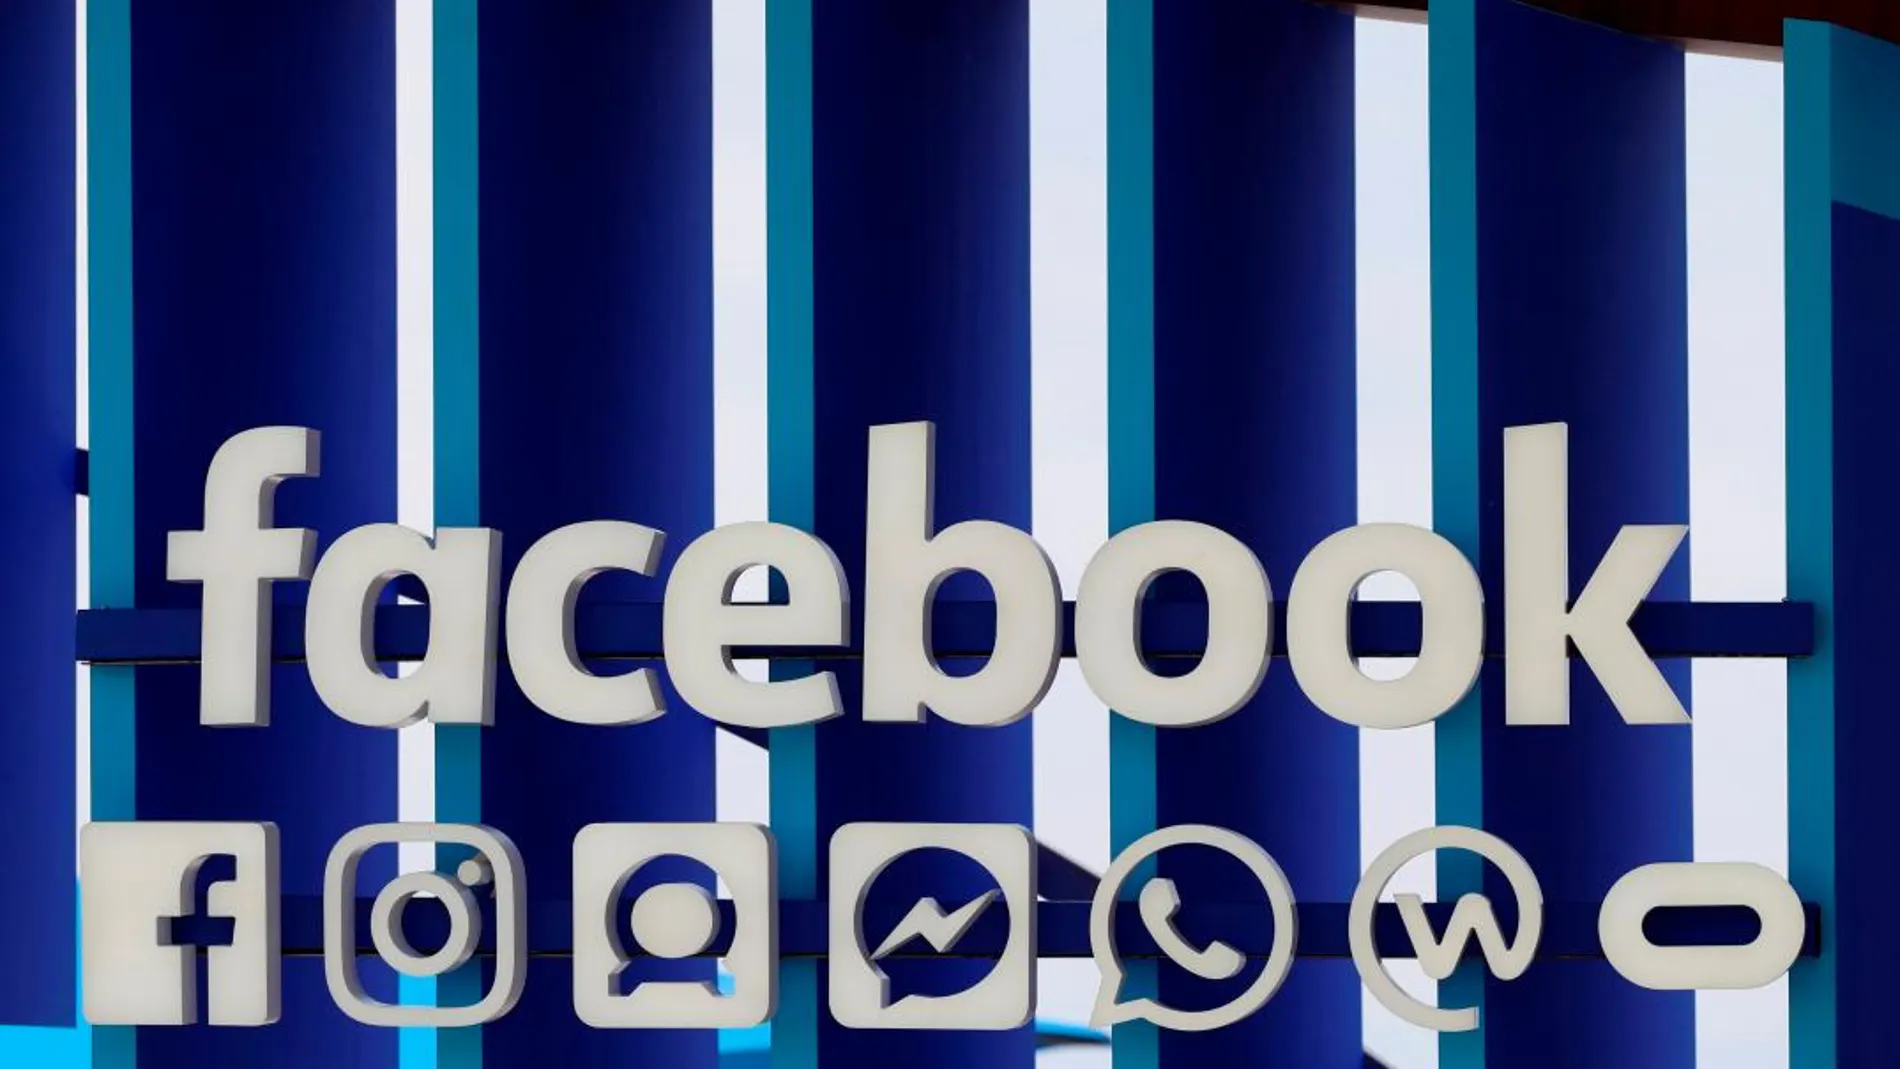 Facebook ha detectado multitud de contenidos inapropiados / Reuters